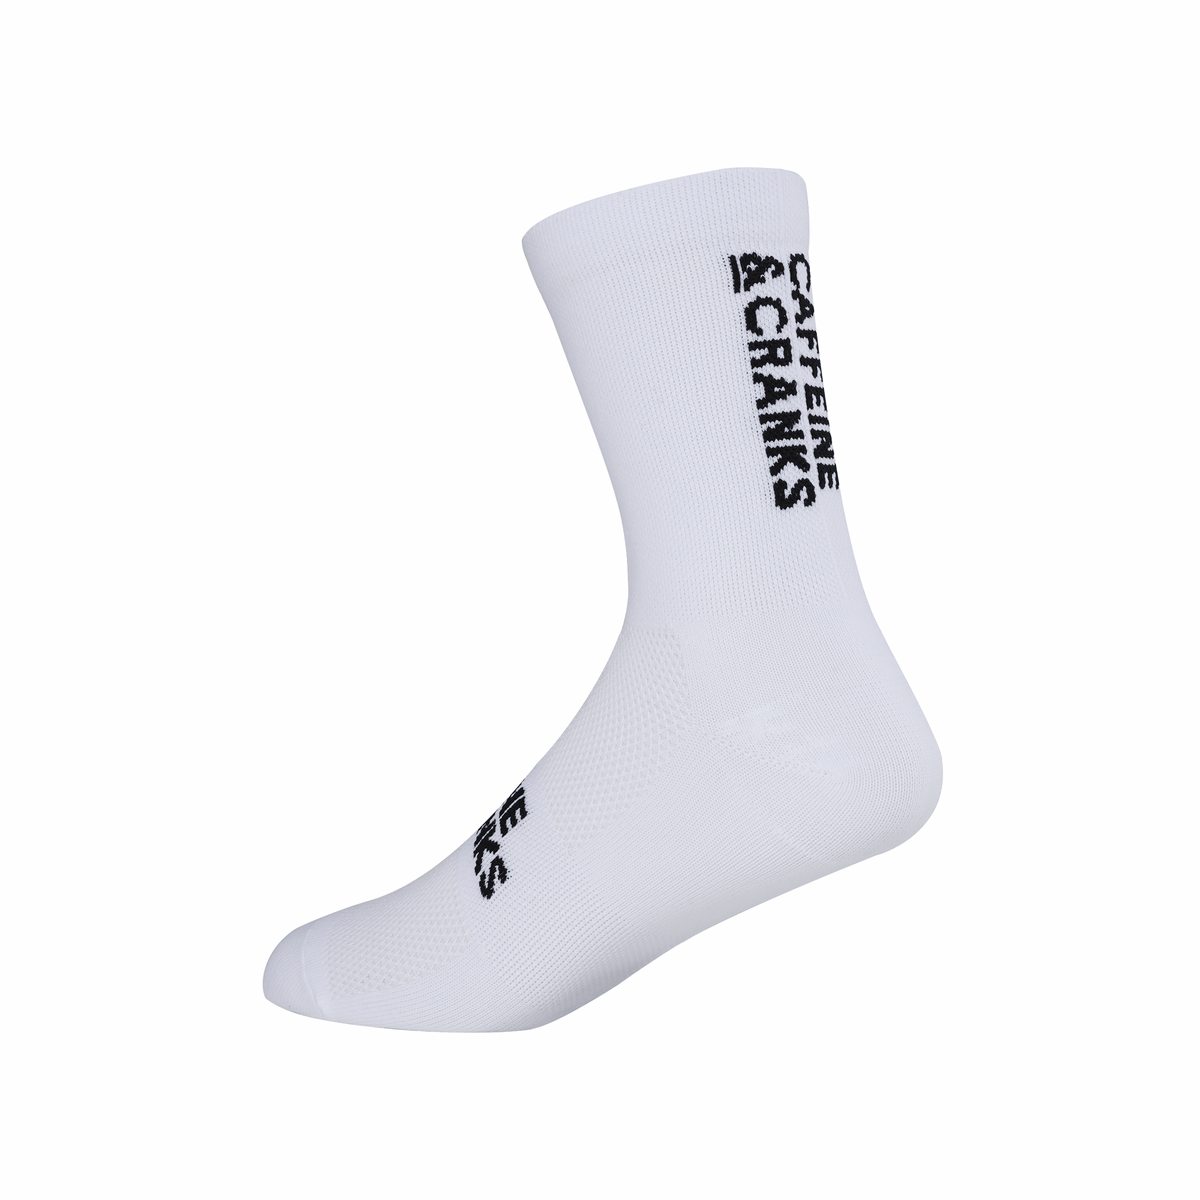 C&C Socks - White